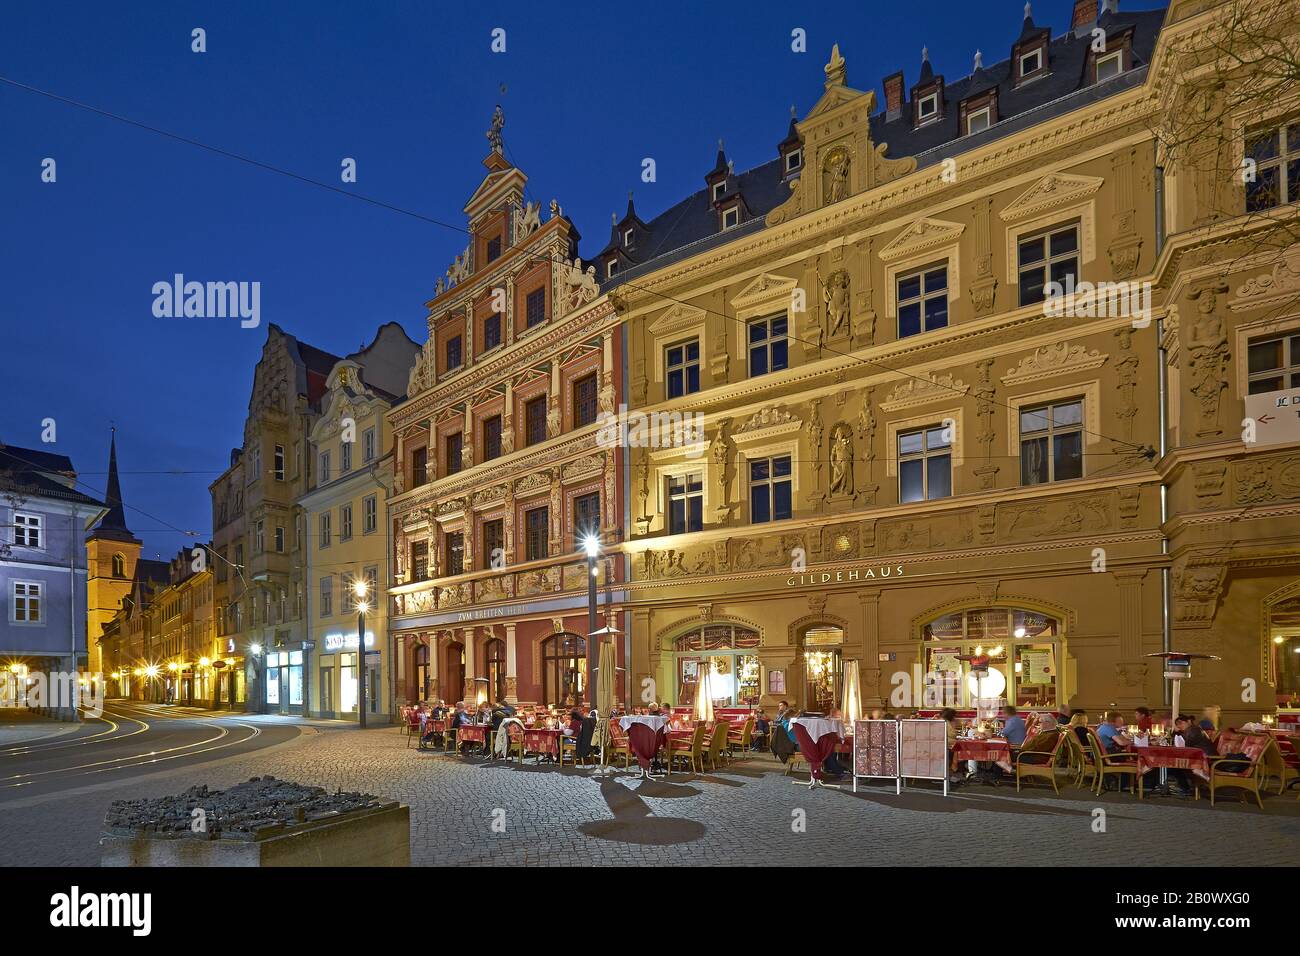 Haus zum weiten Herd und Gildehaus mit Blick auf die Marktstraße in Erfurt, Thüringen, Deutschland, Europa Stockfoto